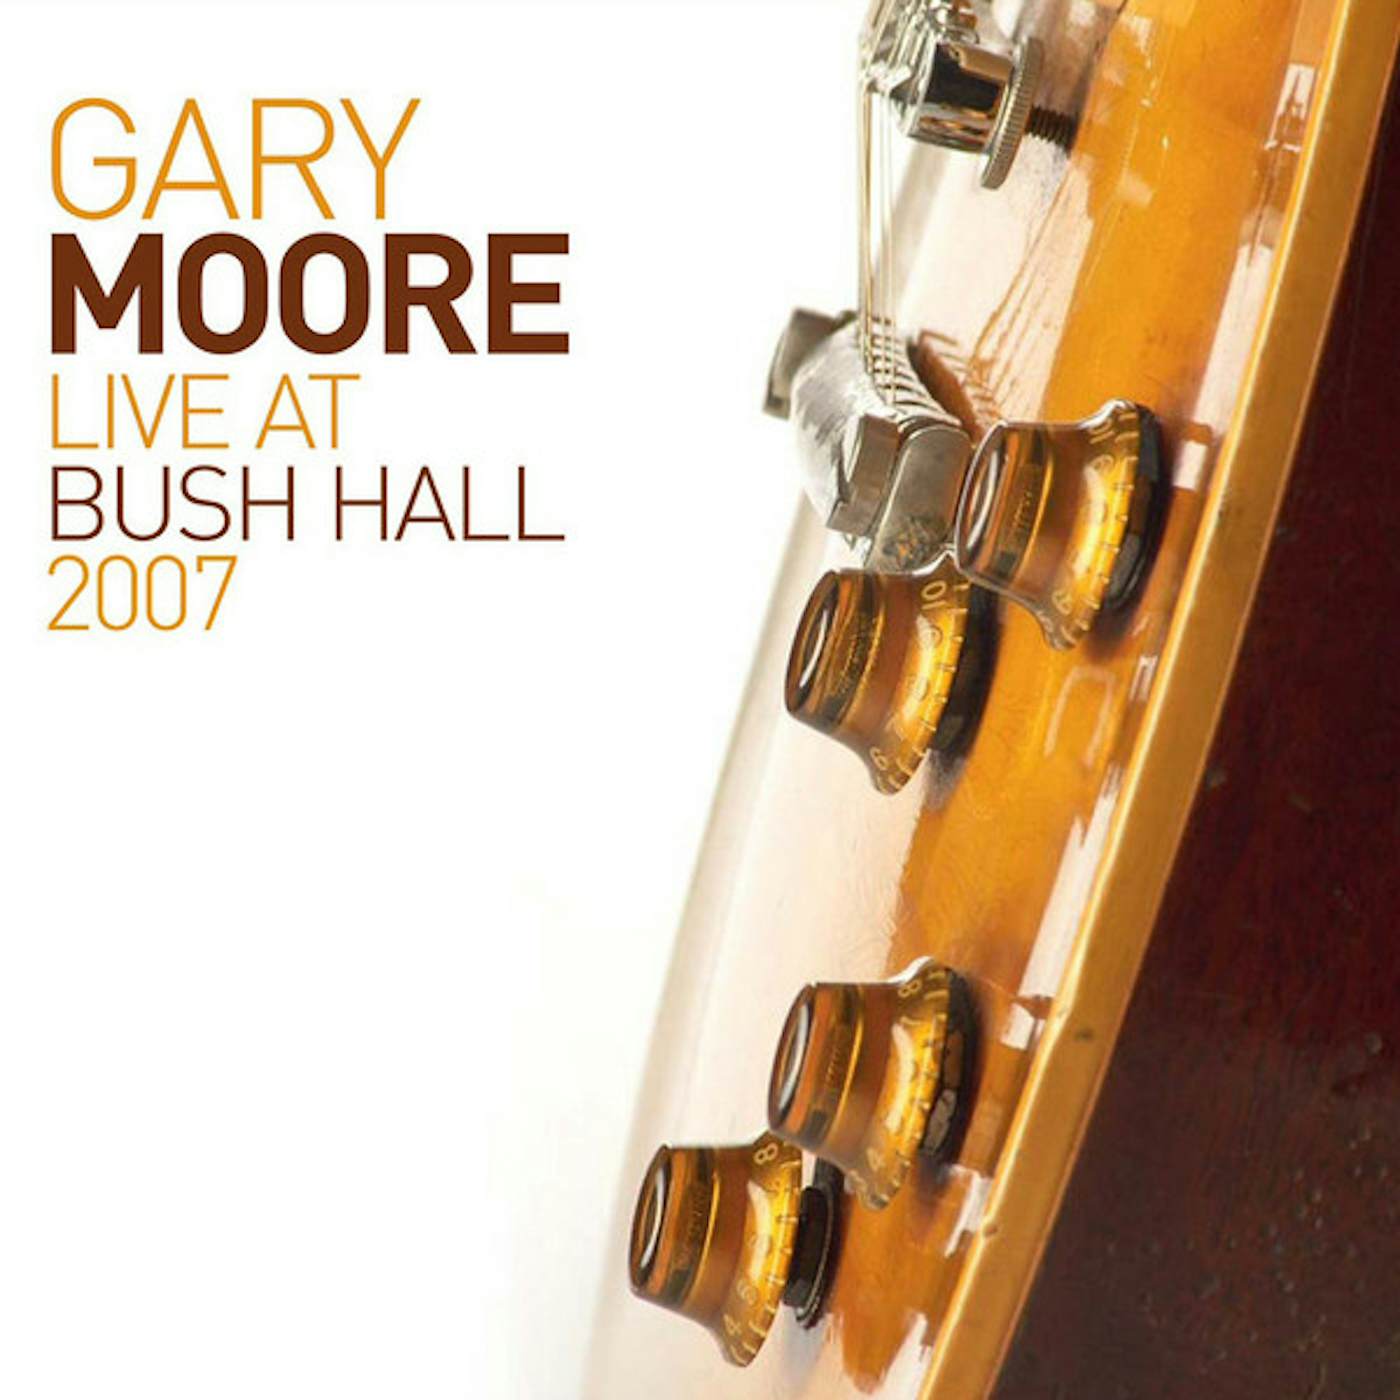 Gary Moore LIVE AT BUSH HALL 2007 (2LP) Vinyl Record